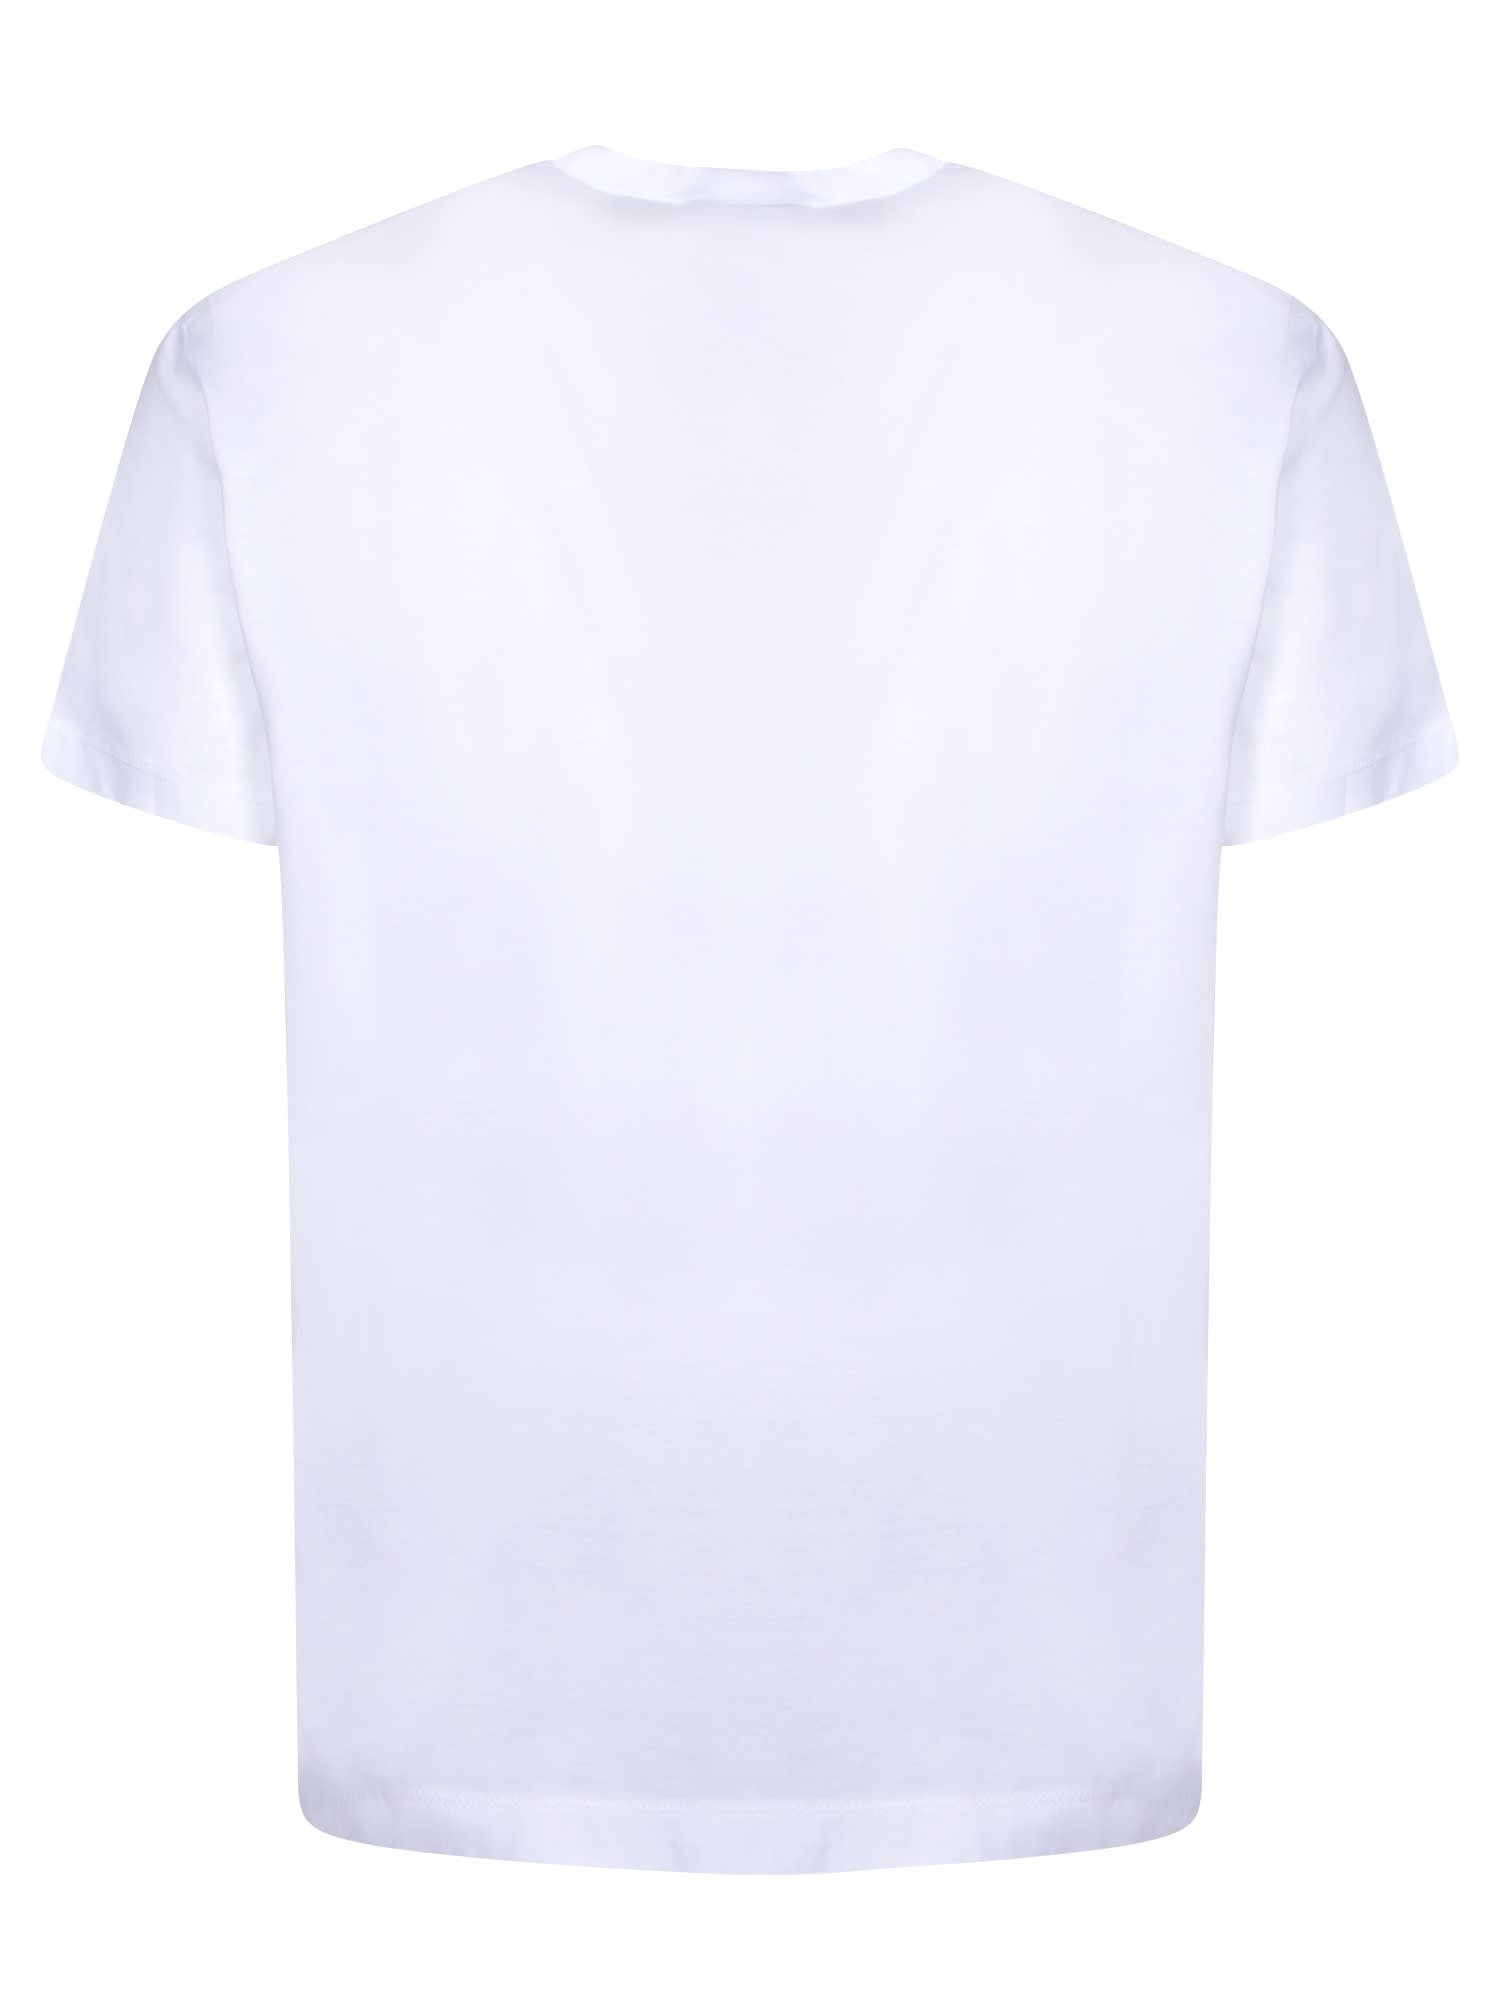 Shop Dsquared2 Mini Logo Cool White T-shirt